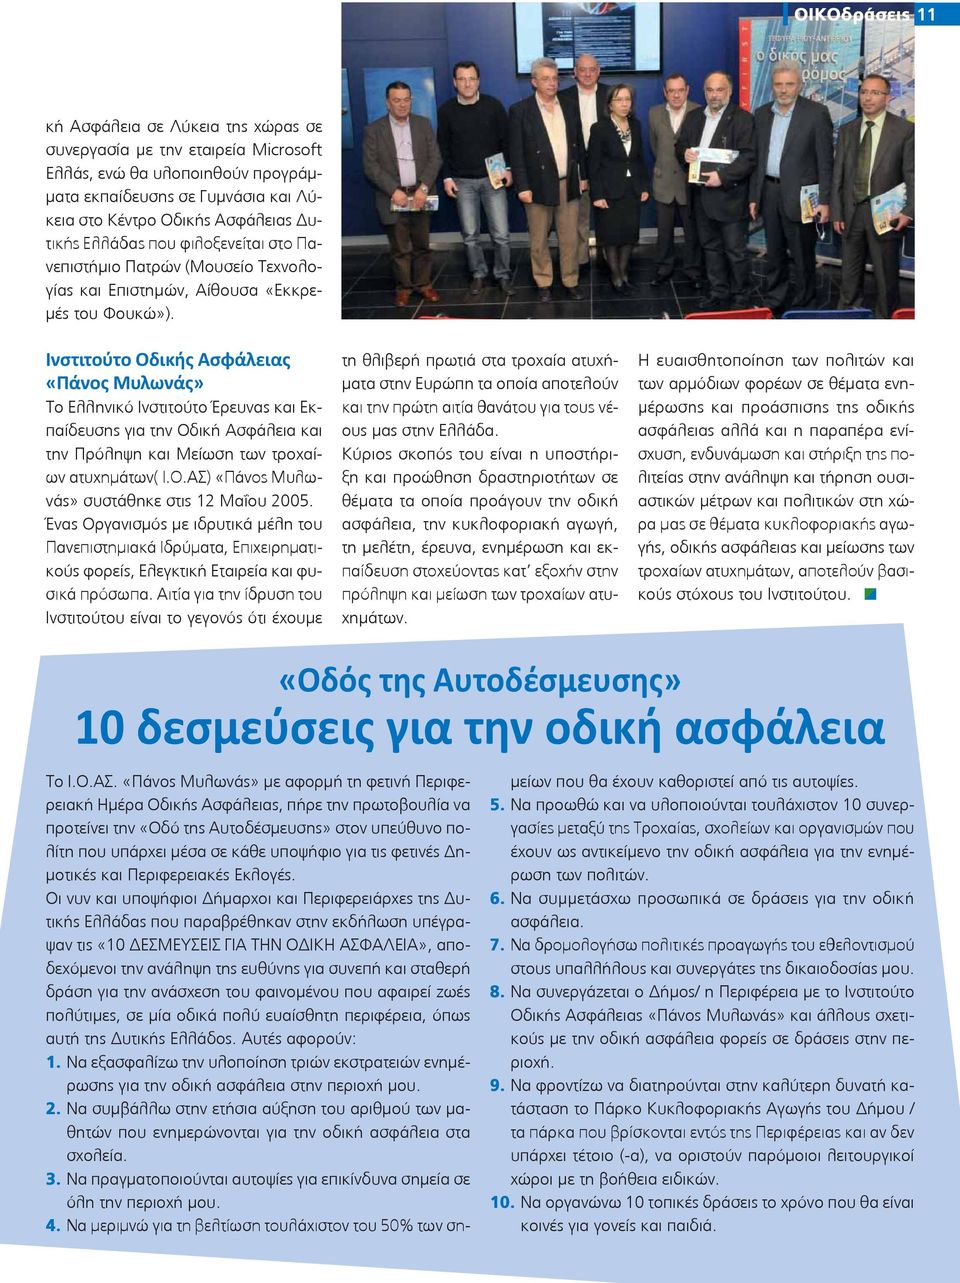 Ινστιτούτο Οδικής Ασφάλειας «Πάνος Μυλωνάς» Το Ελληνικό Ινστιτούτο Έρευνας και Εκπαίδευσης για την Οδική Ασφάλεια και την Πρόληψη και Μείωση των τροχαίων ατυχημάτων( Ι.Ο.ΑΣ) «Πάνος Μυλωνάς» συστάθηκε στις 12 Μαΐου 2005.